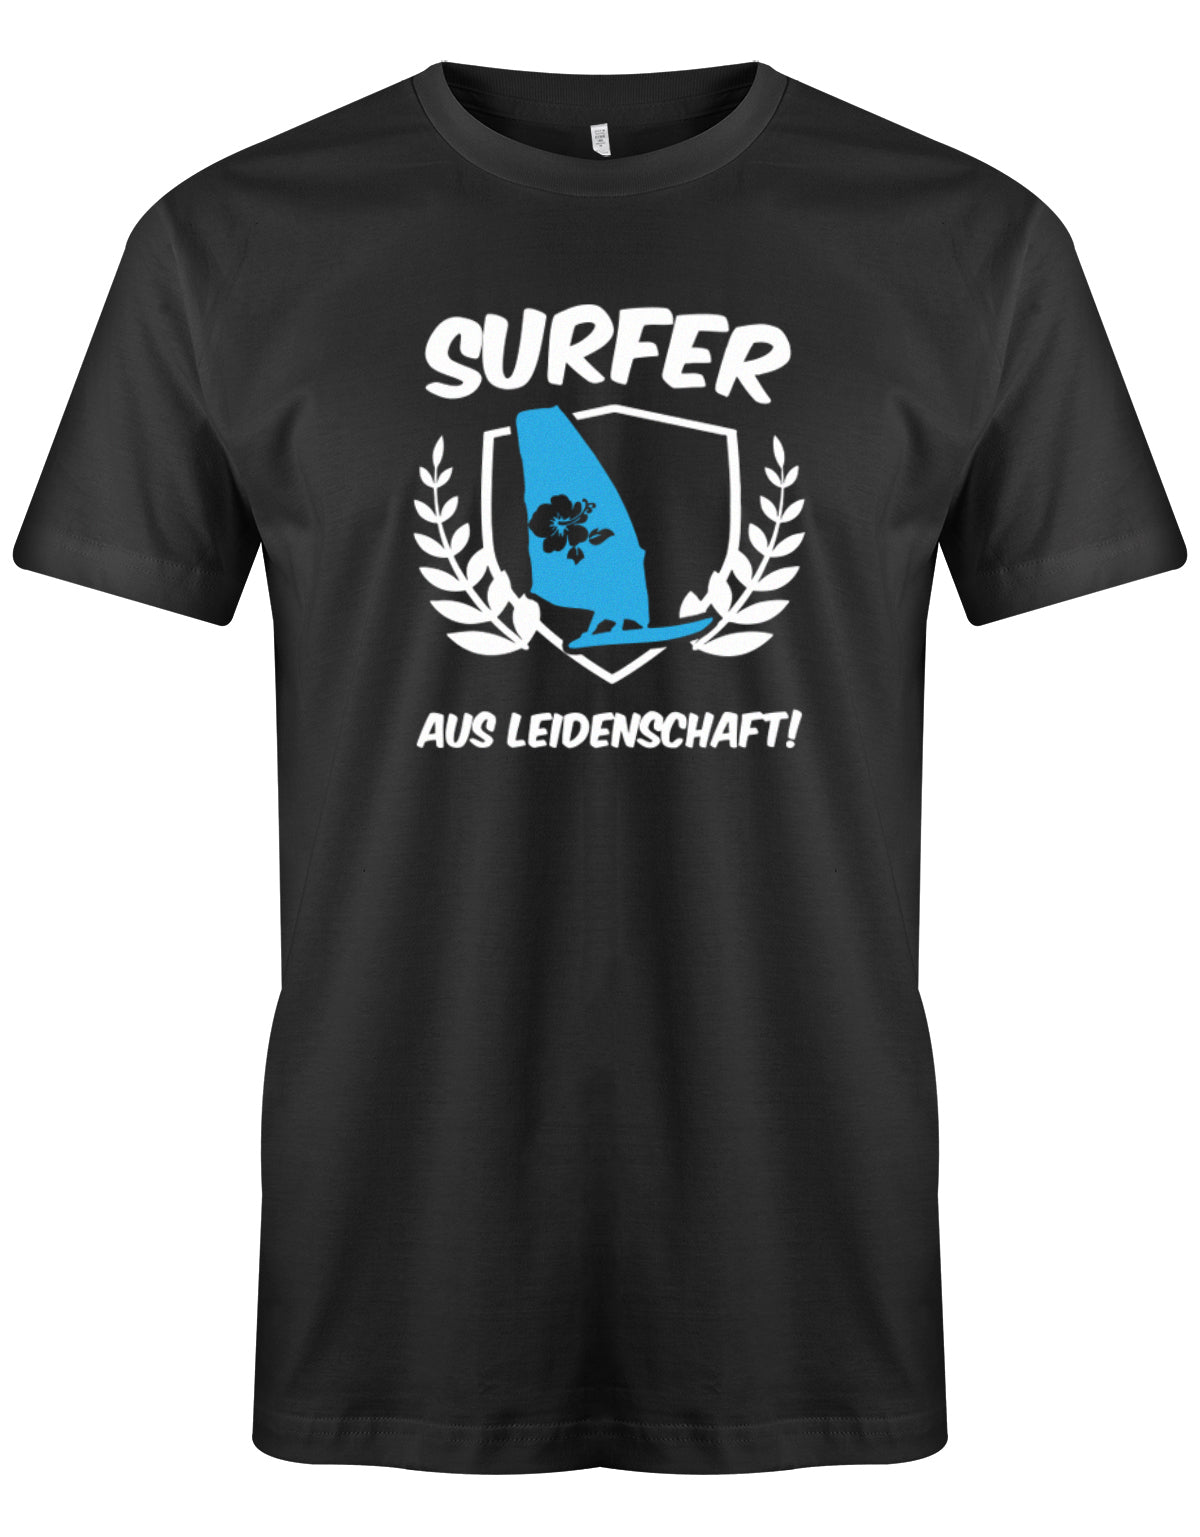 Das lustige Surfer t-shirt bedruckt mit "Surfer Aus Leidenschaft mit Surfer und Hibiskus Segel. Schwarz